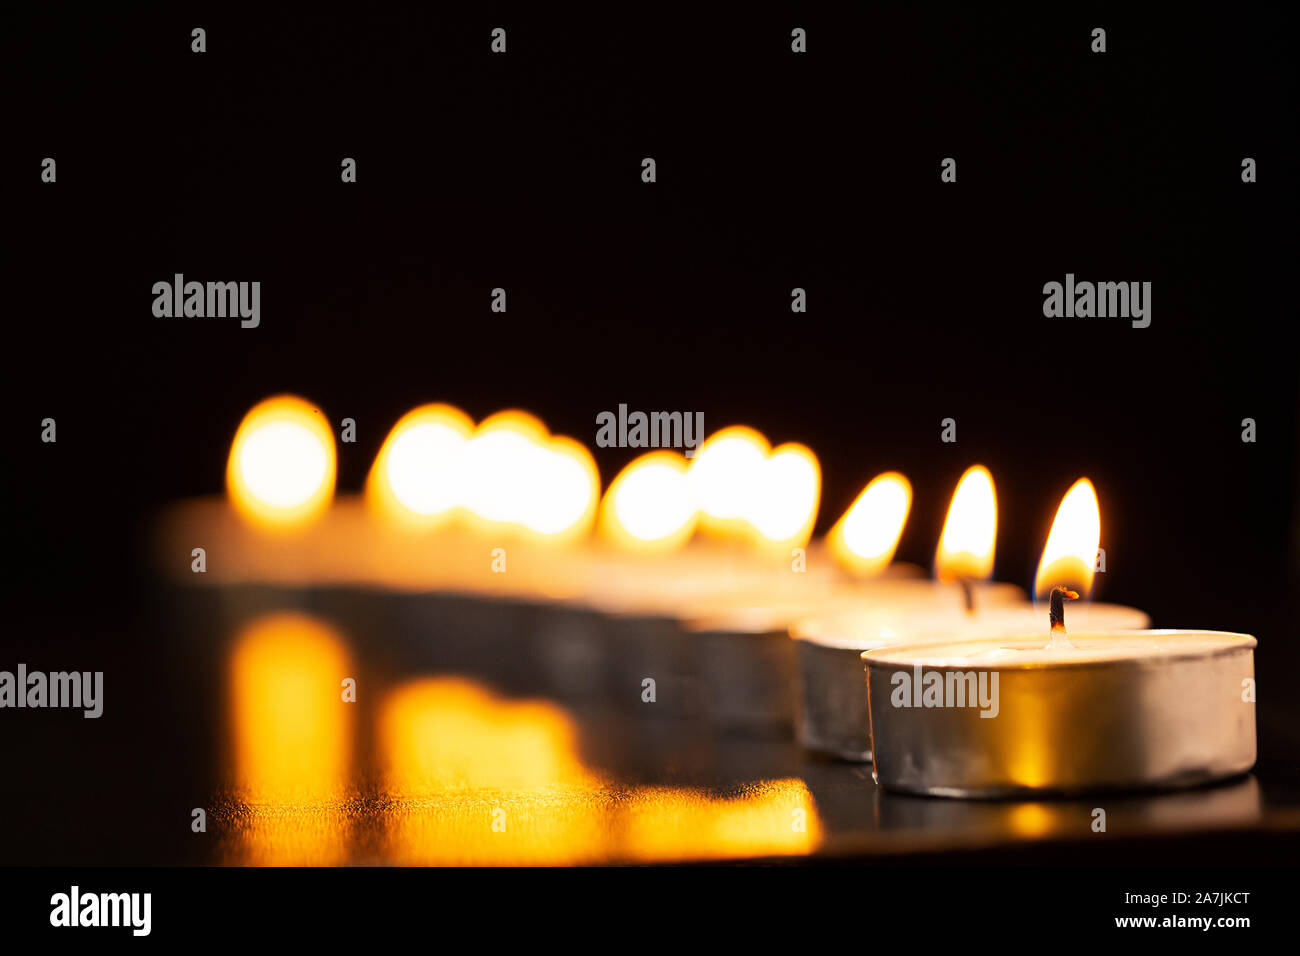 Velas en la línea nocturna de velas iluminación encendida durante el Festival de Diwali celebración nadie Foto de stock